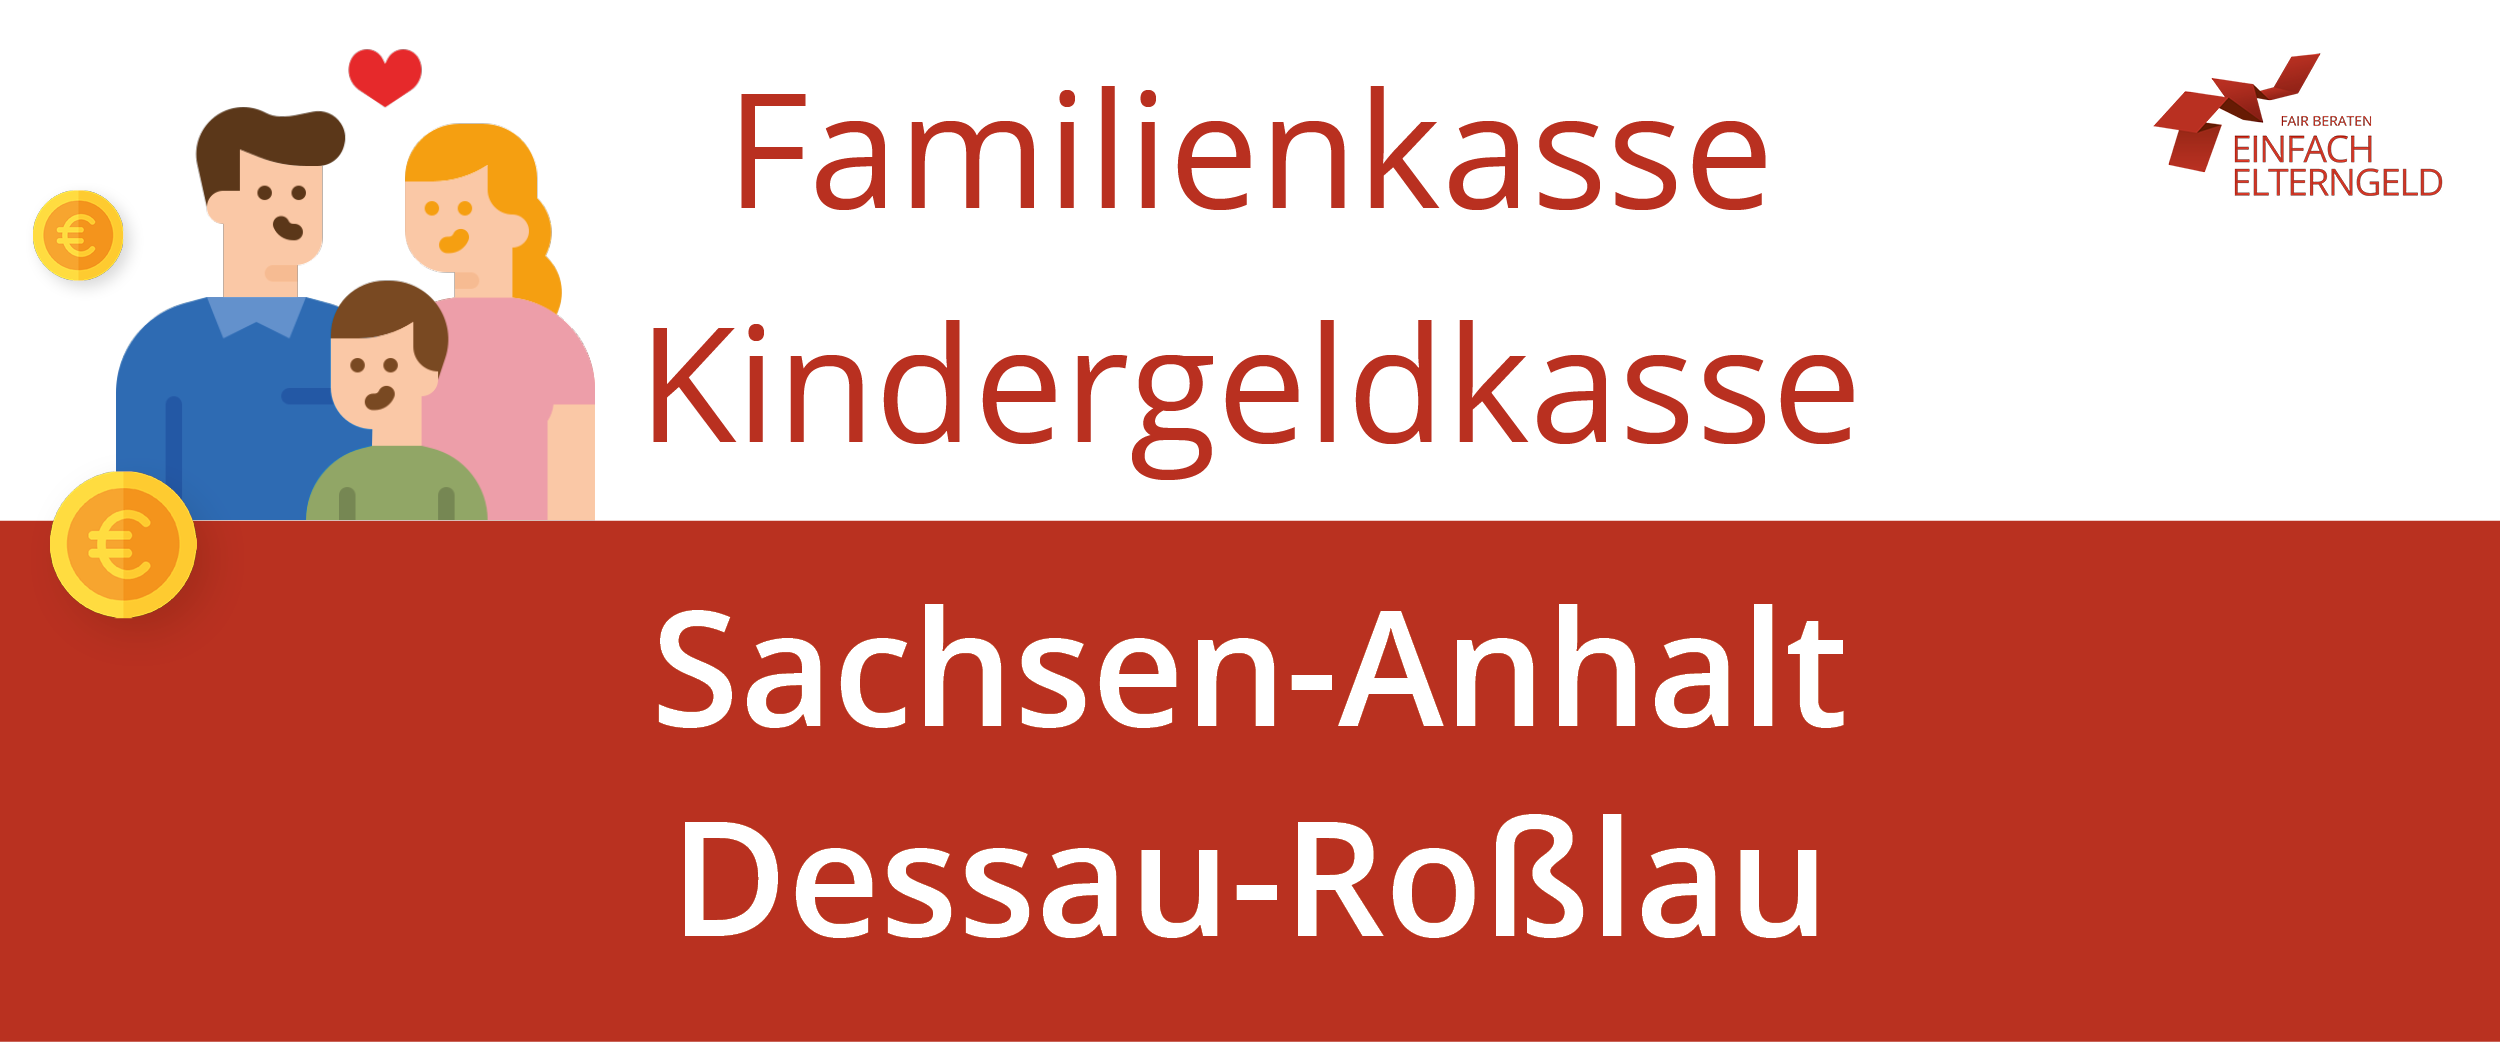 Familienkasse Kindergeldkasse Sachsen-Anhalt Dessau-Rosslau - So erreichen Sie Ihre Familienkasse.